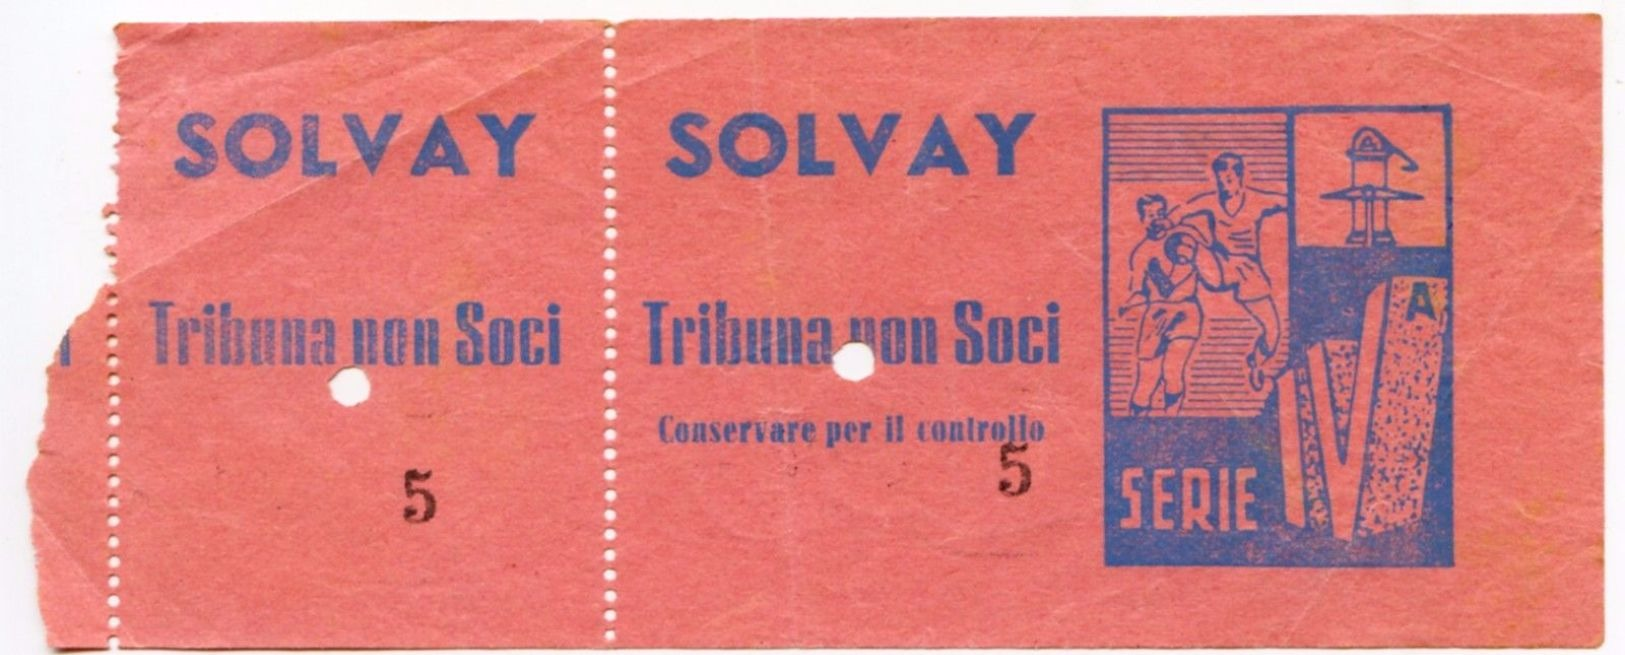 033> G.S. ROSIGNANO SOLVAY - Biglietto CALCIO Stadio IV^ SERIE 1953-54 Rarissimo - Livorno - Biglietti D'ingresso